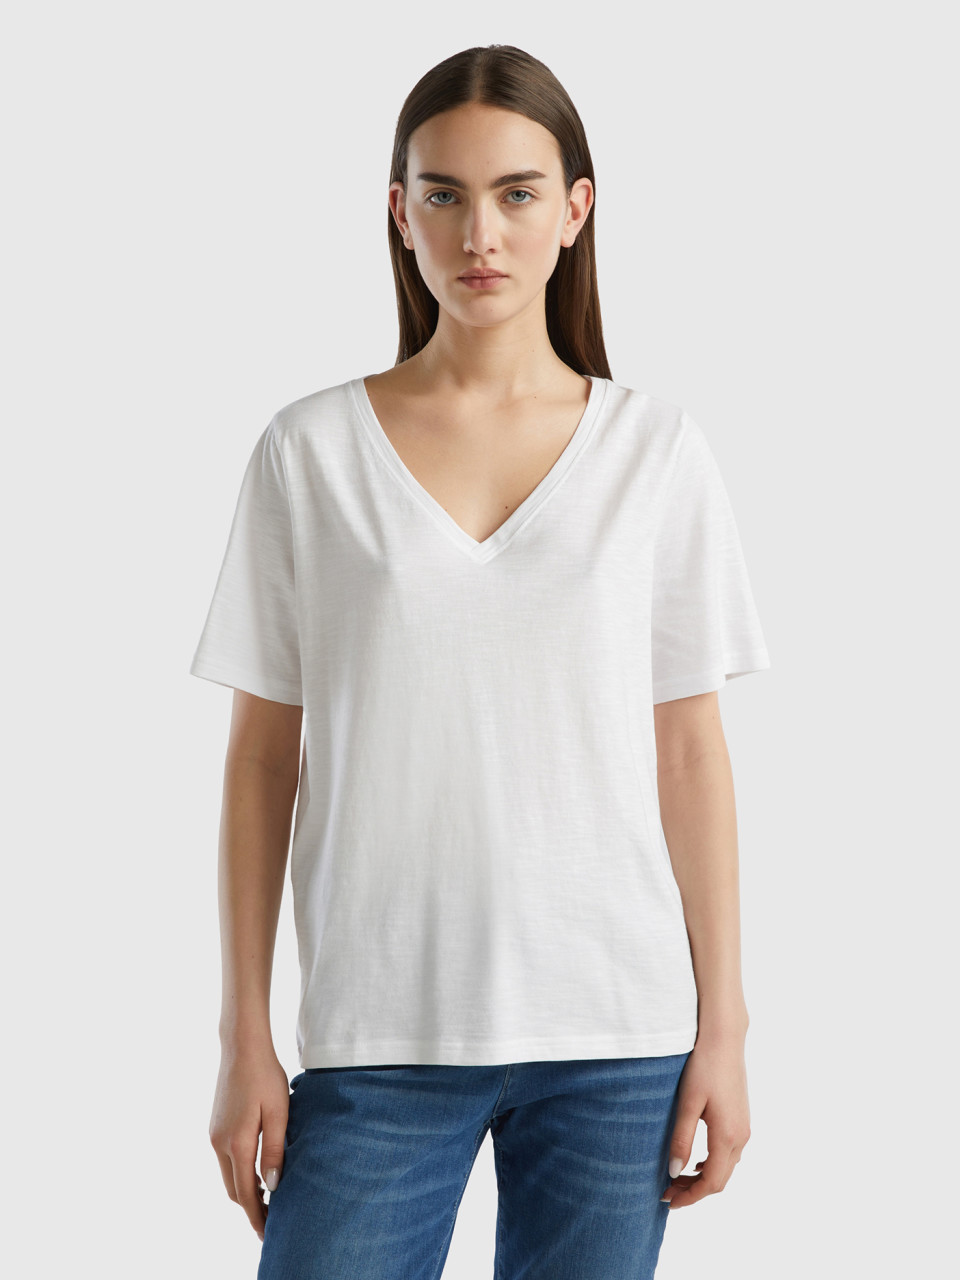 Benetton, Geflammtes Baumwoll-t-shirt Mit V-ausschnitt, Weiss, female